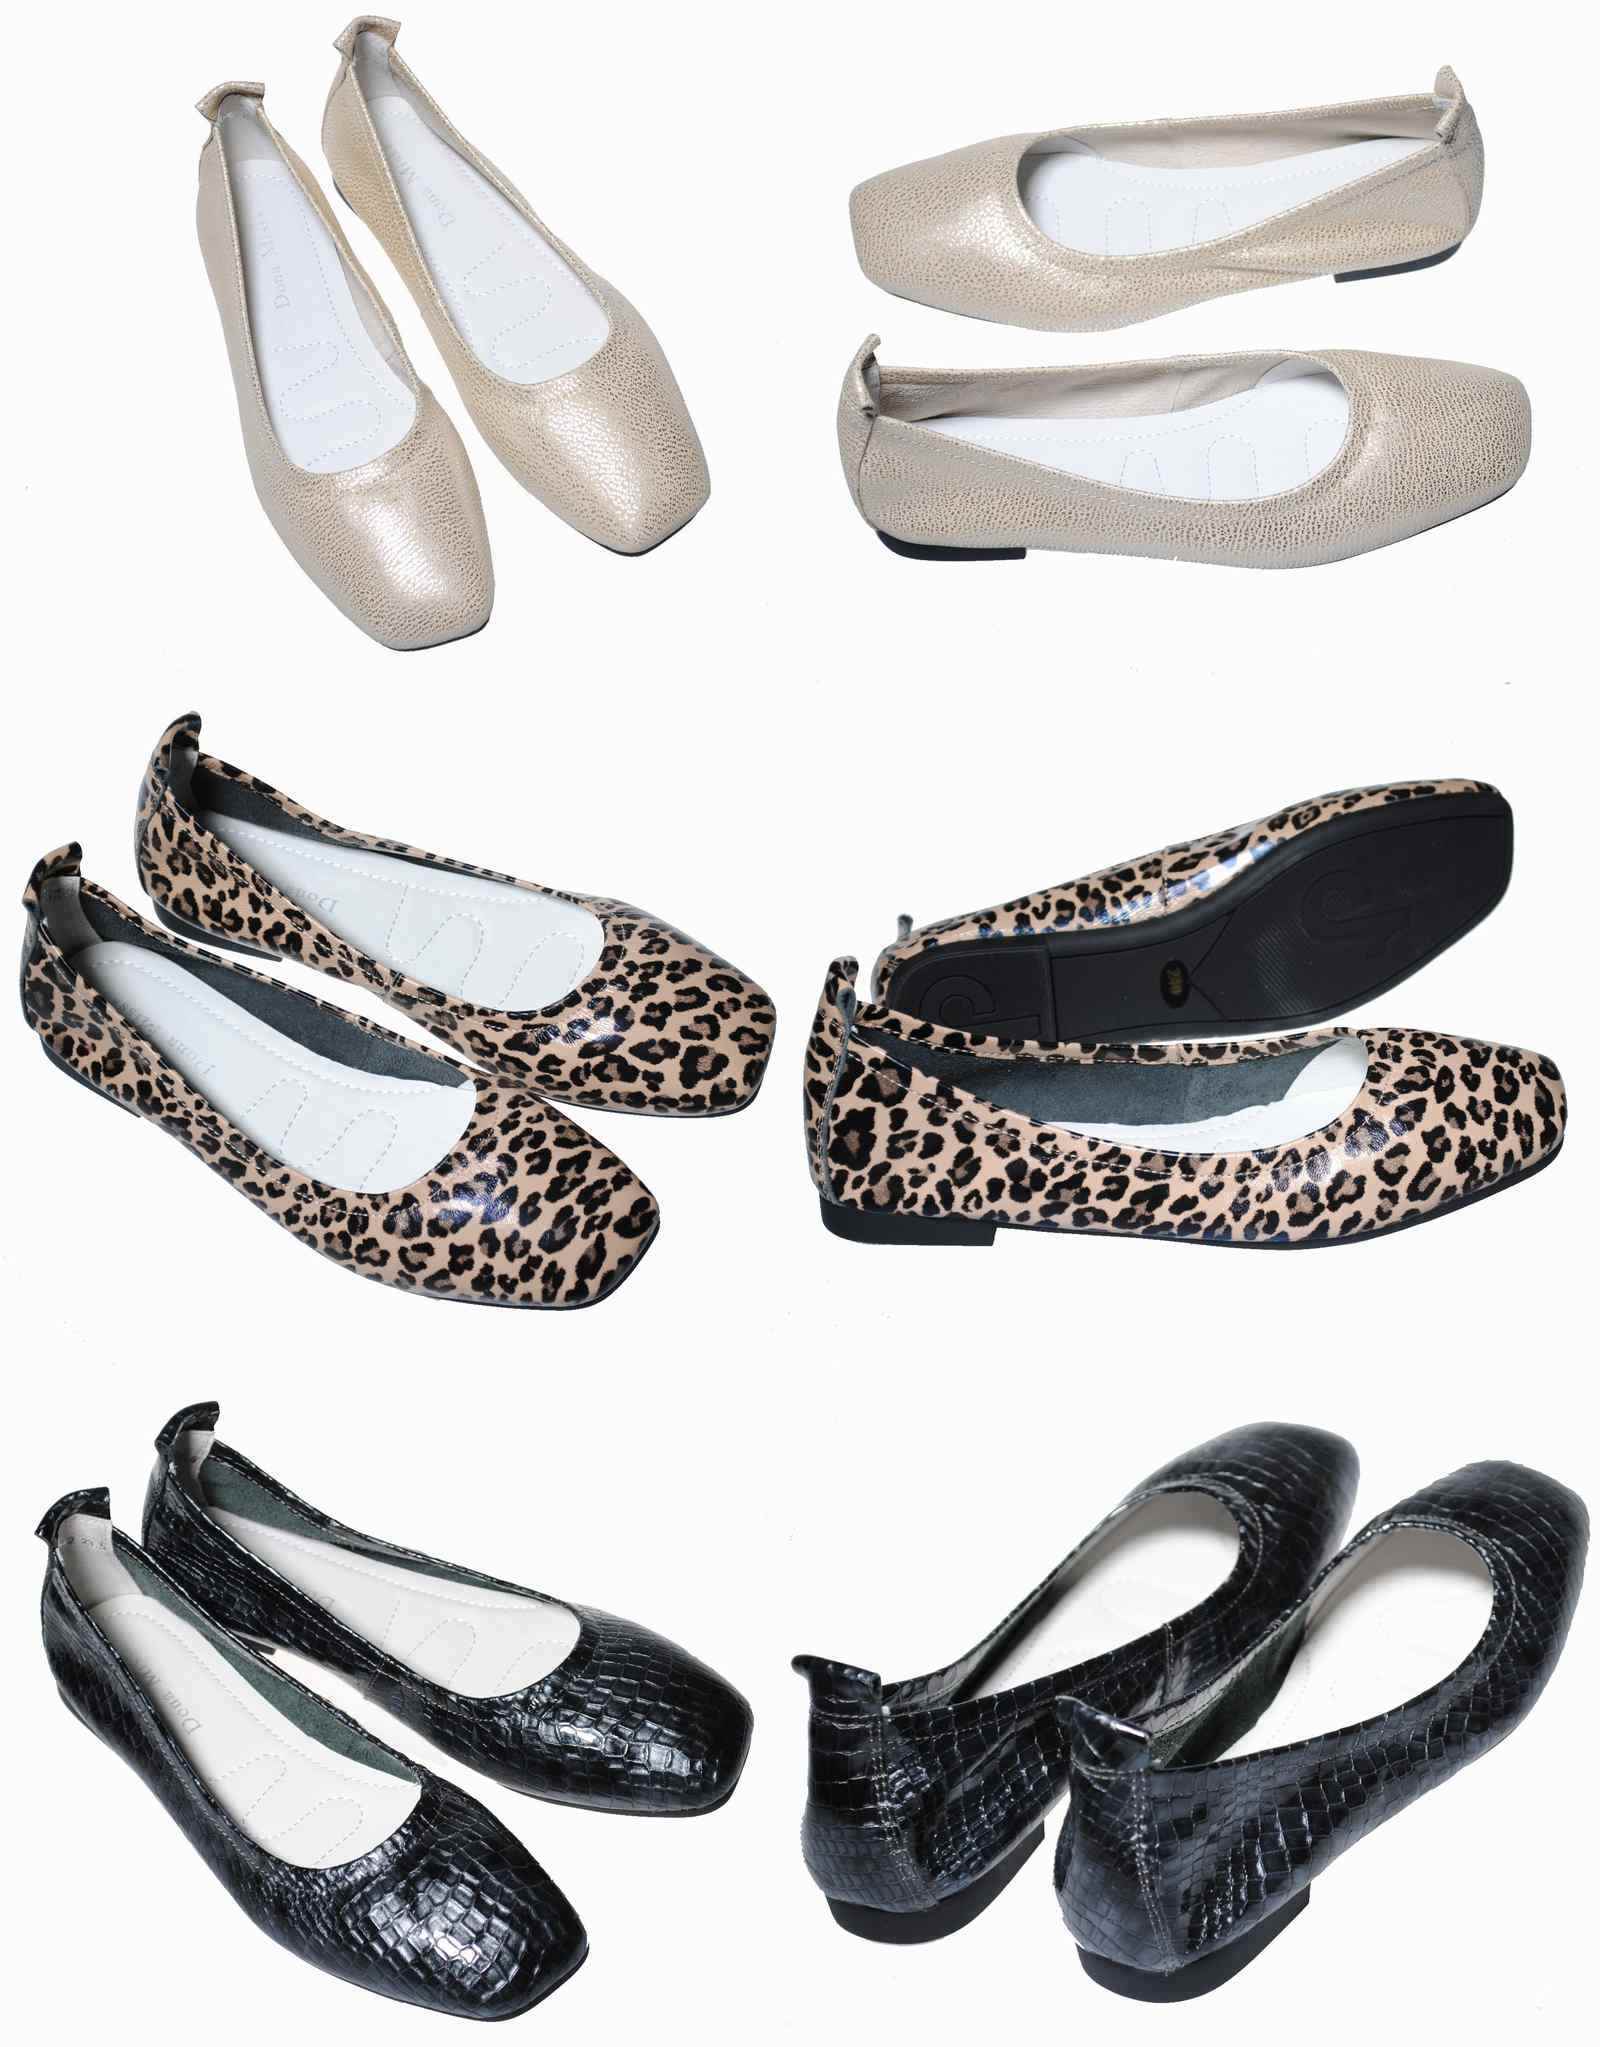 Dona Miss 1808-42 21.5cm〜24.5cm カッター :1808-42-gr-donamiss:靴のHOSHIKAWA ヤフー店  - 通販 - Yahoo!ショッピング